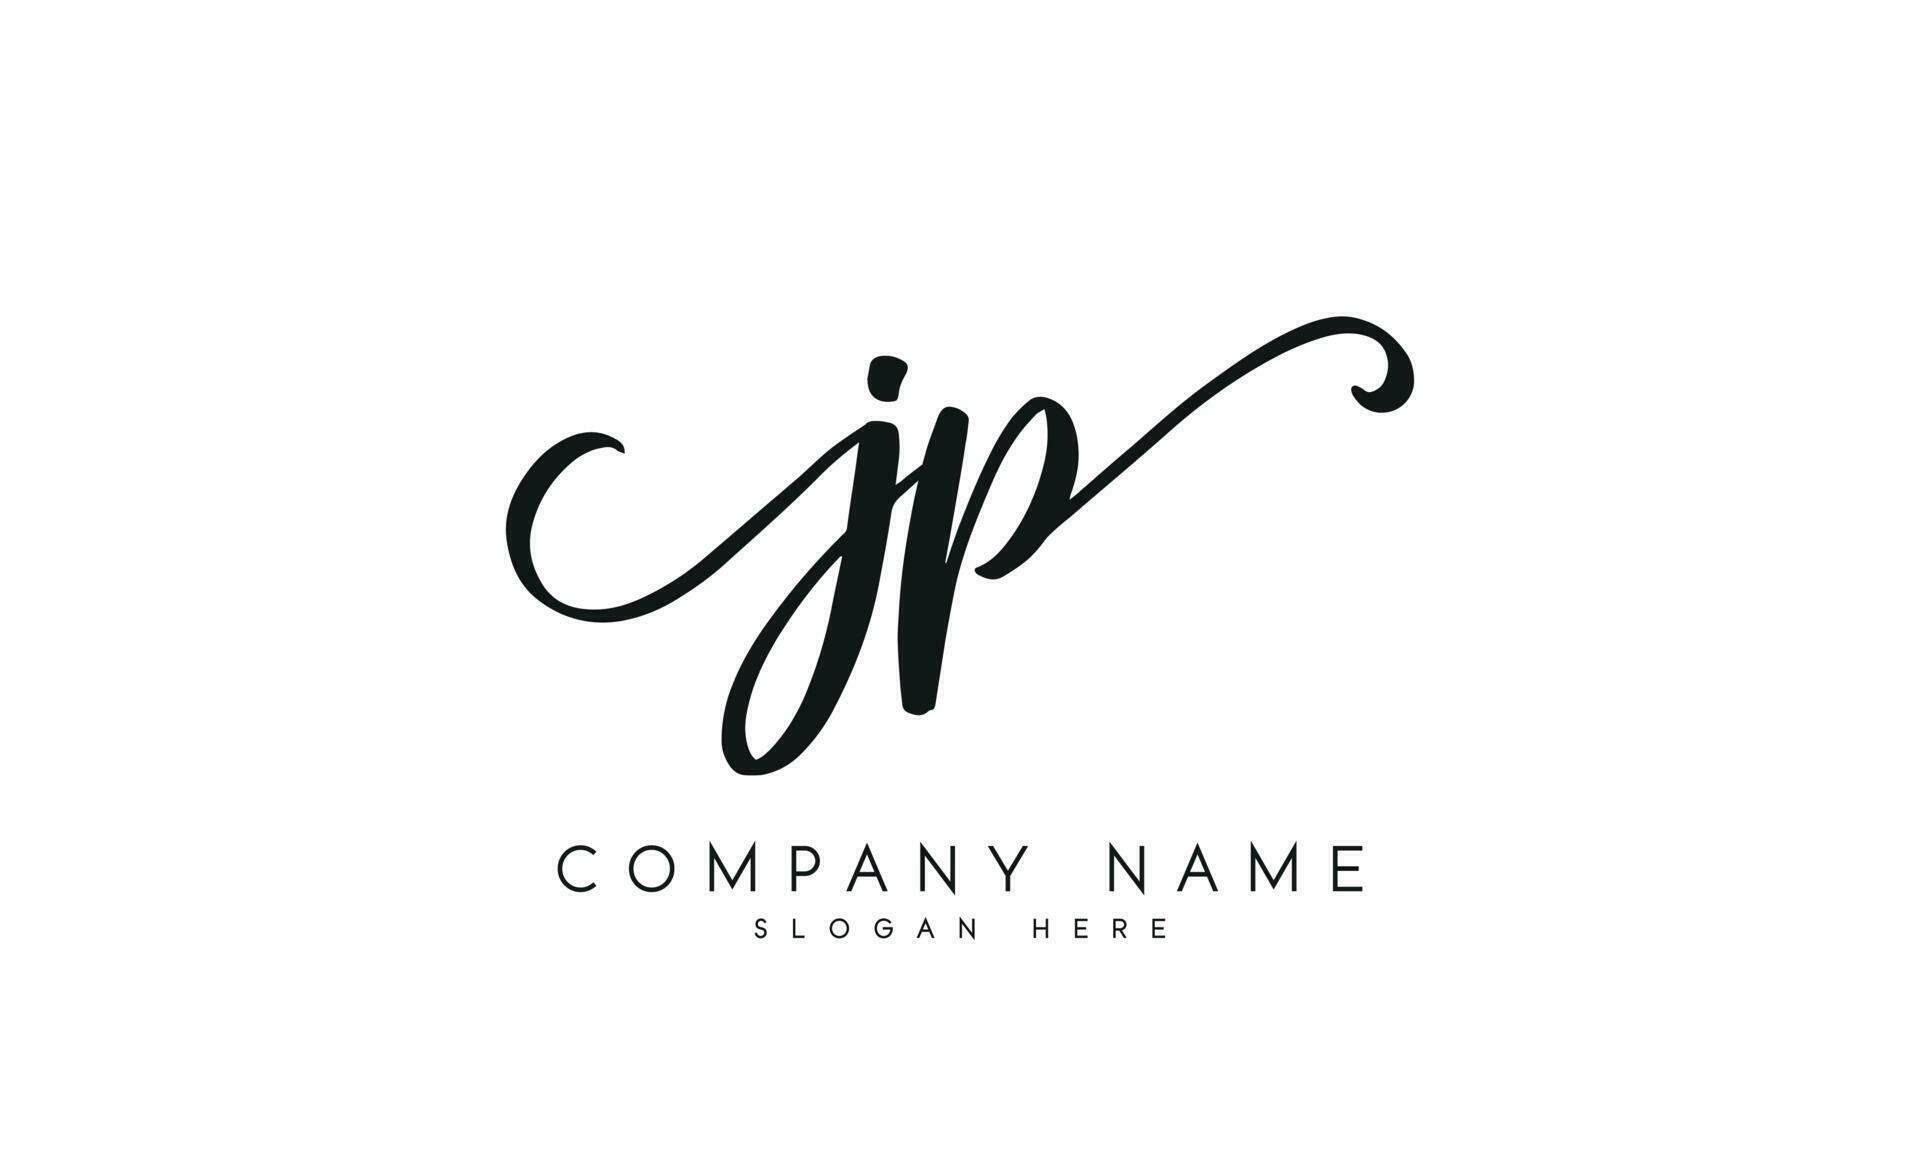 Handwriting JP logo design. JP logo design vector illustration on white ...